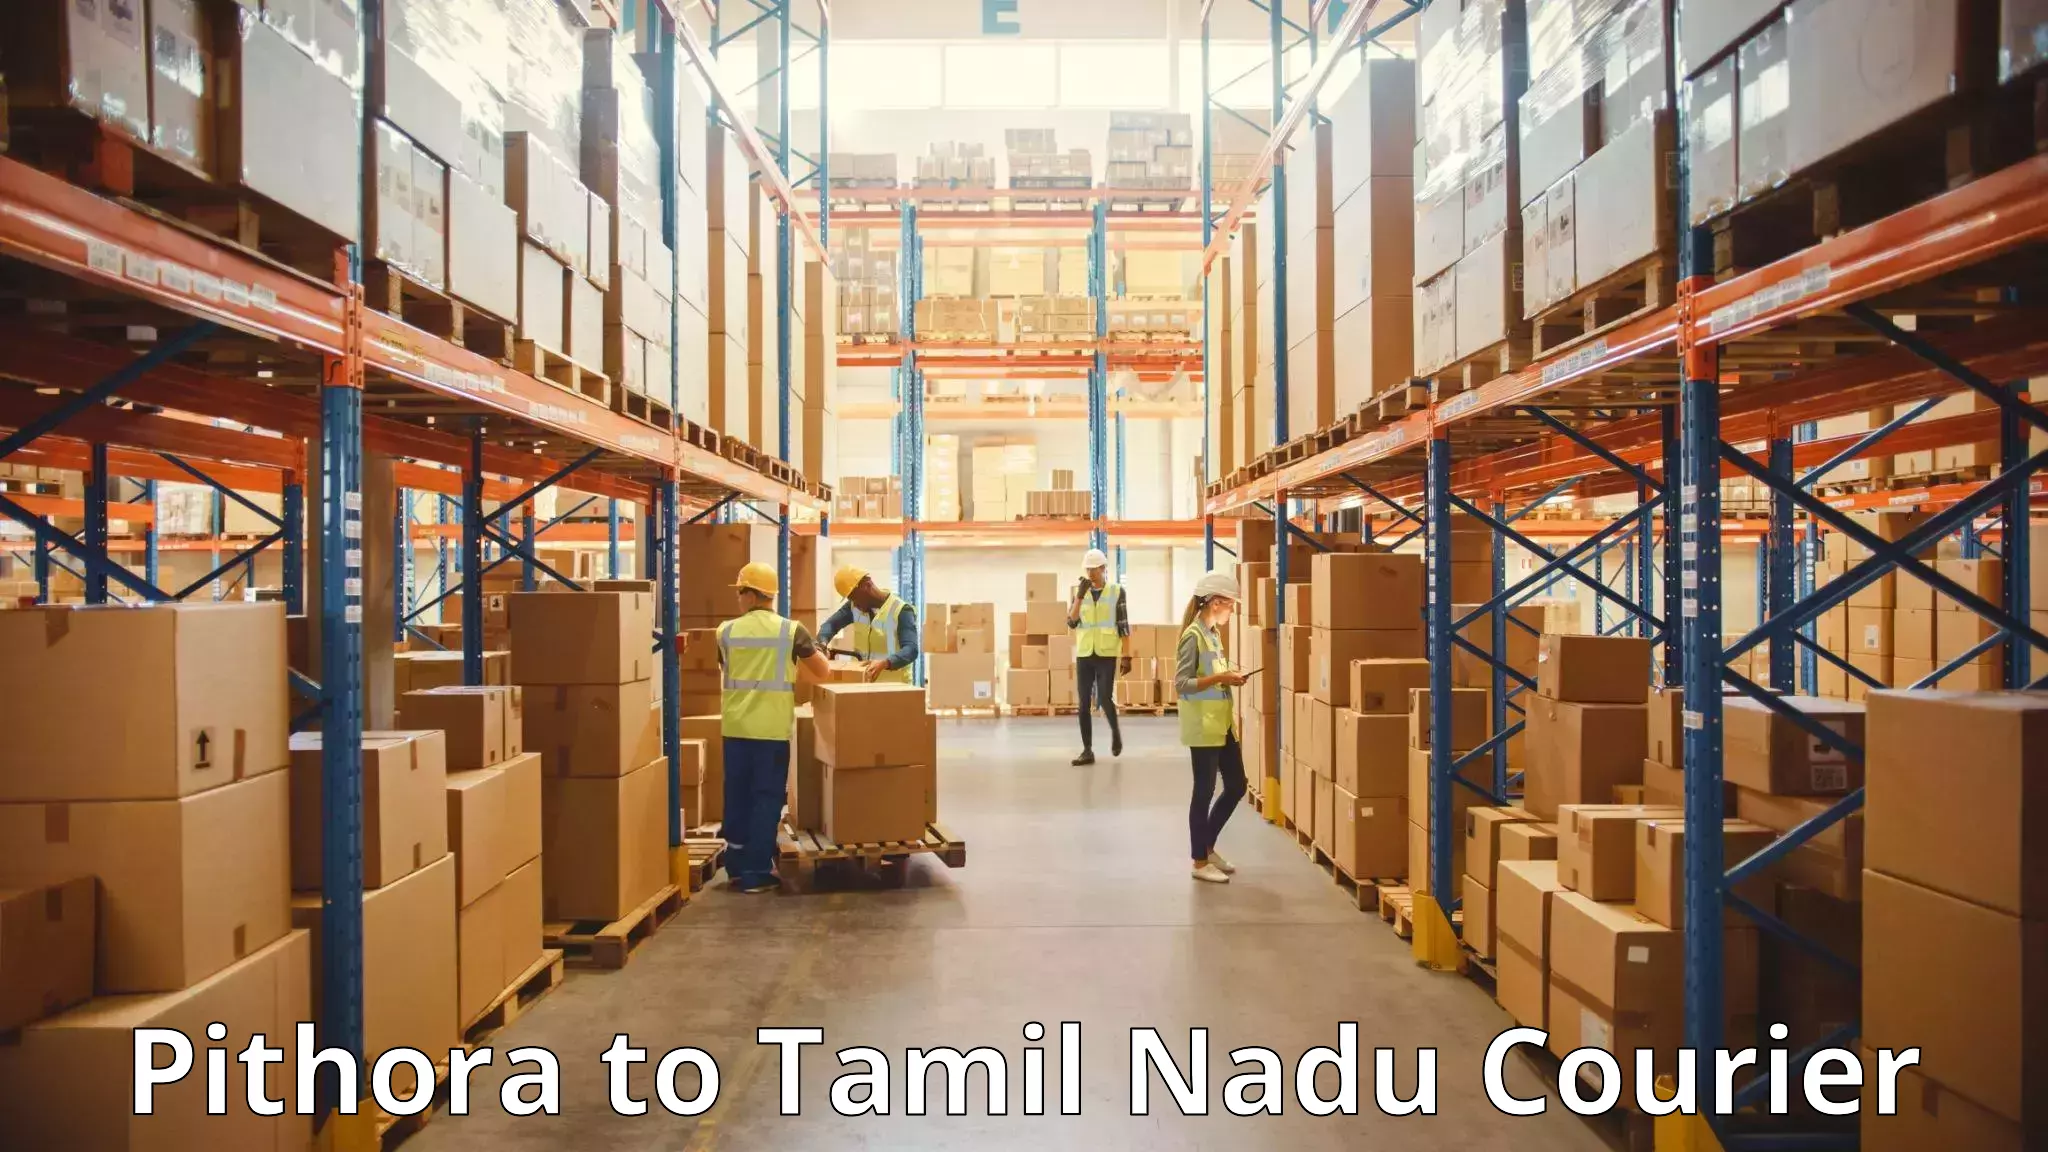 Baggage transport management Pithora to Tamil Nadu